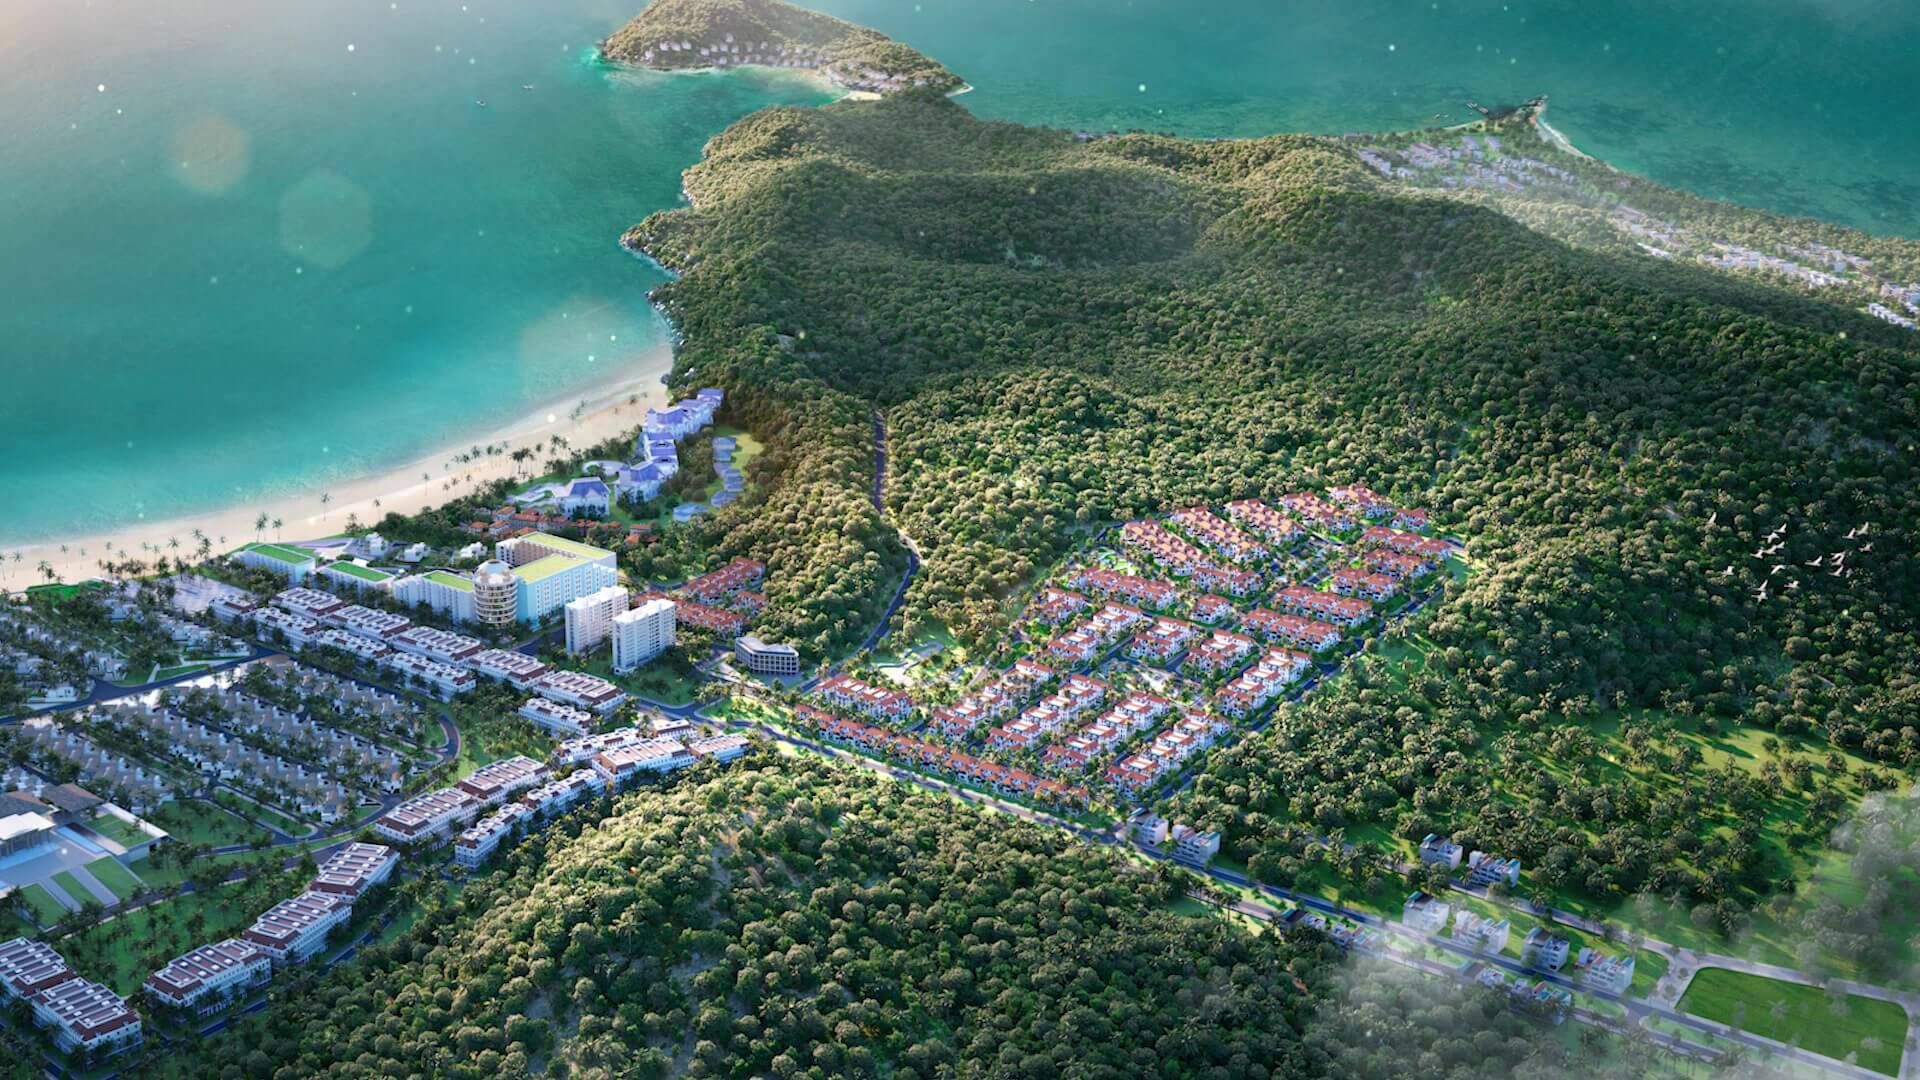 Địa hình SUn Tropical Village bằng phẳng chuẩn phong thủy biệt thự biển